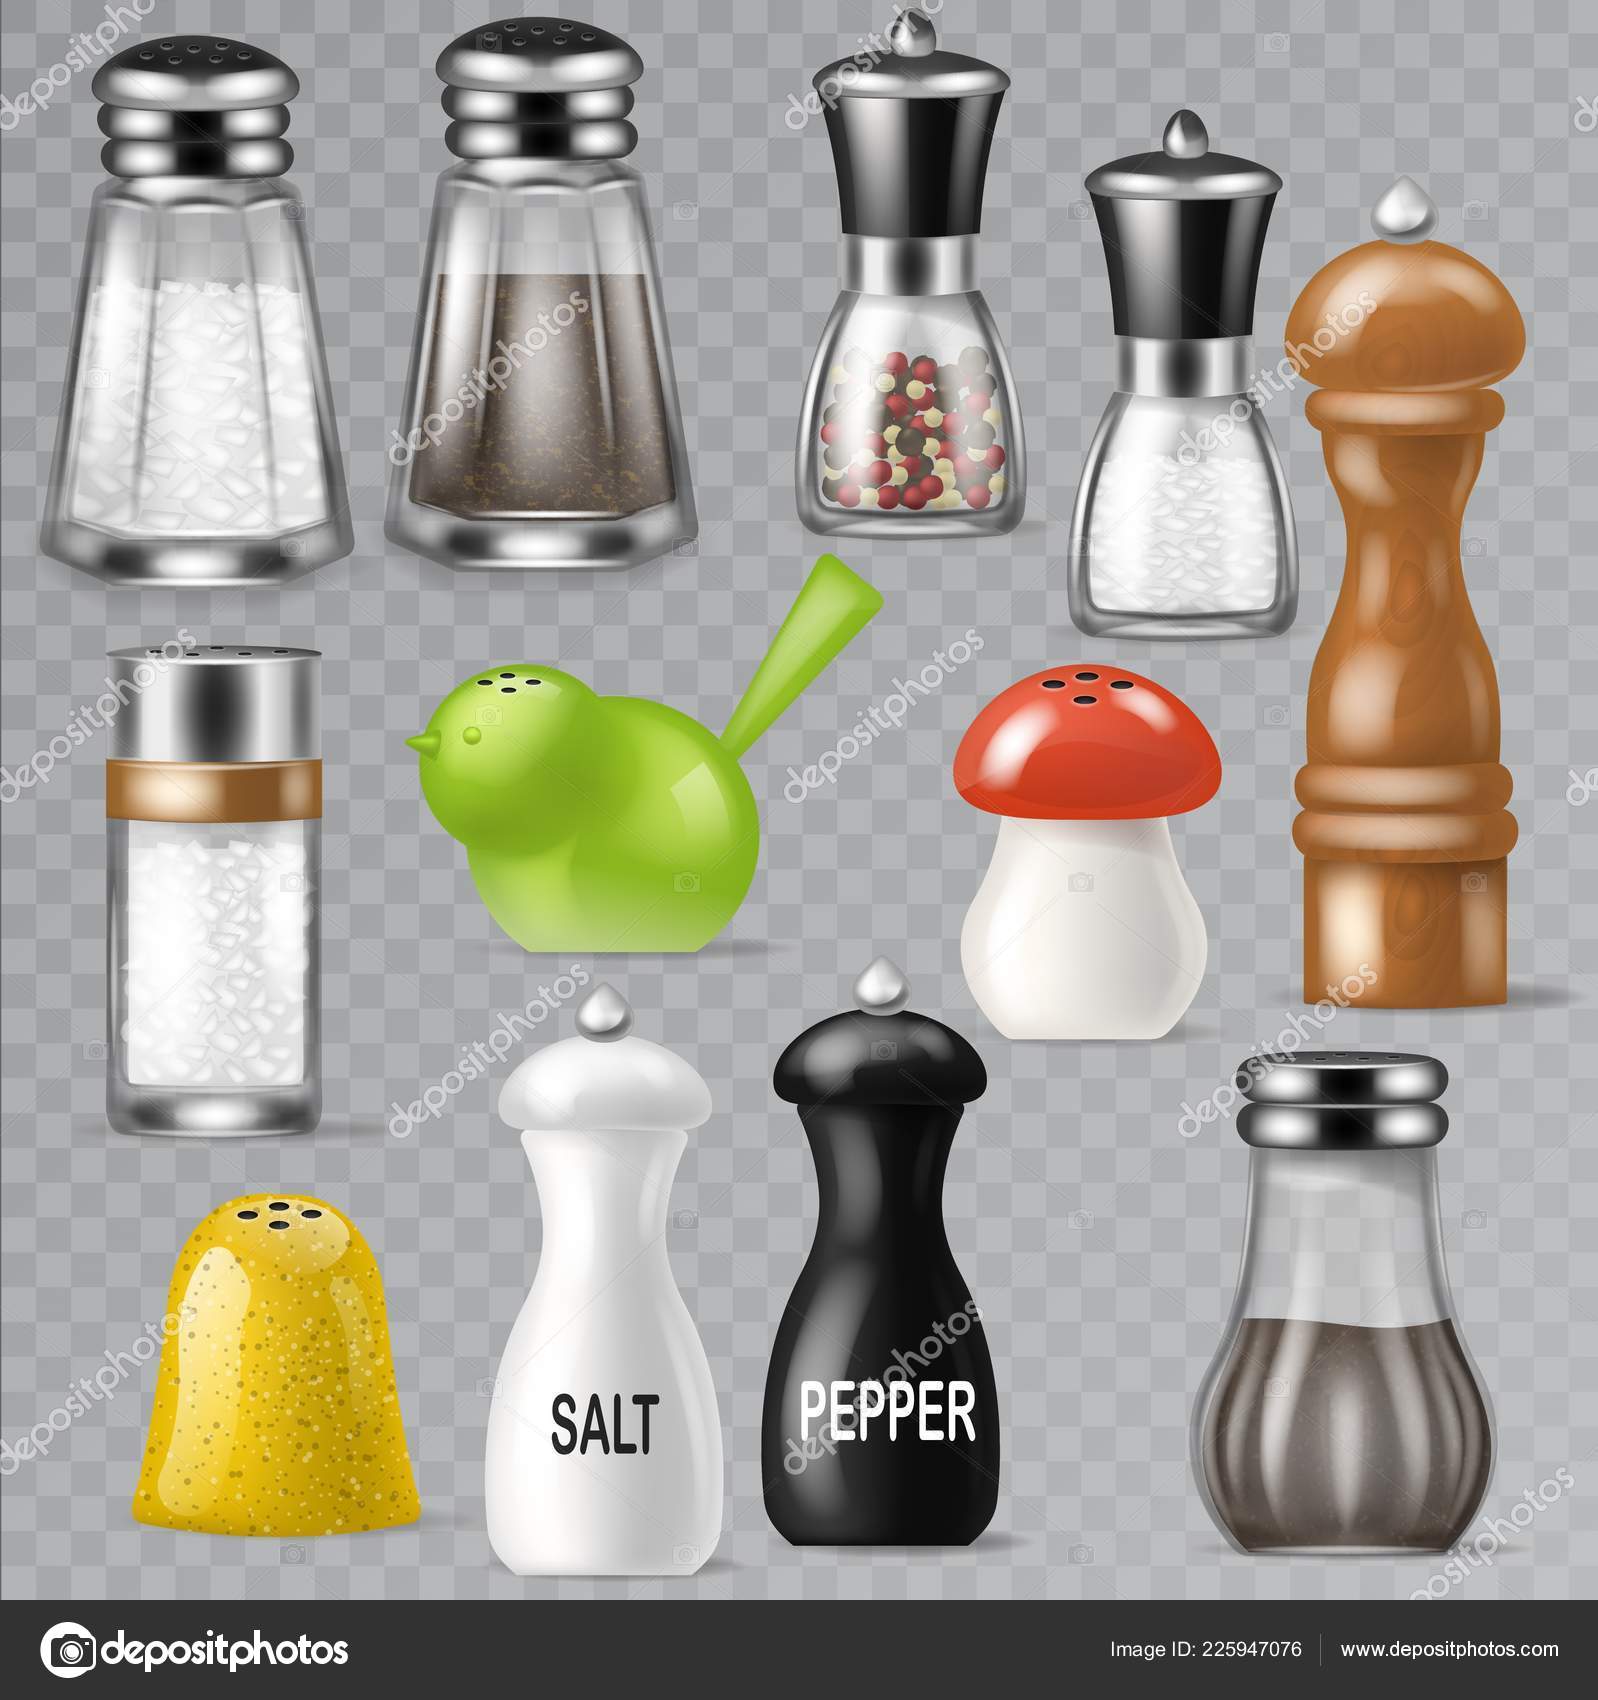 https://st4.depositphotos.com/6741230/22594/v/1600/depositphotos_225947076-stock-illustration-salt-shaker-vector-design-pepper.jpg